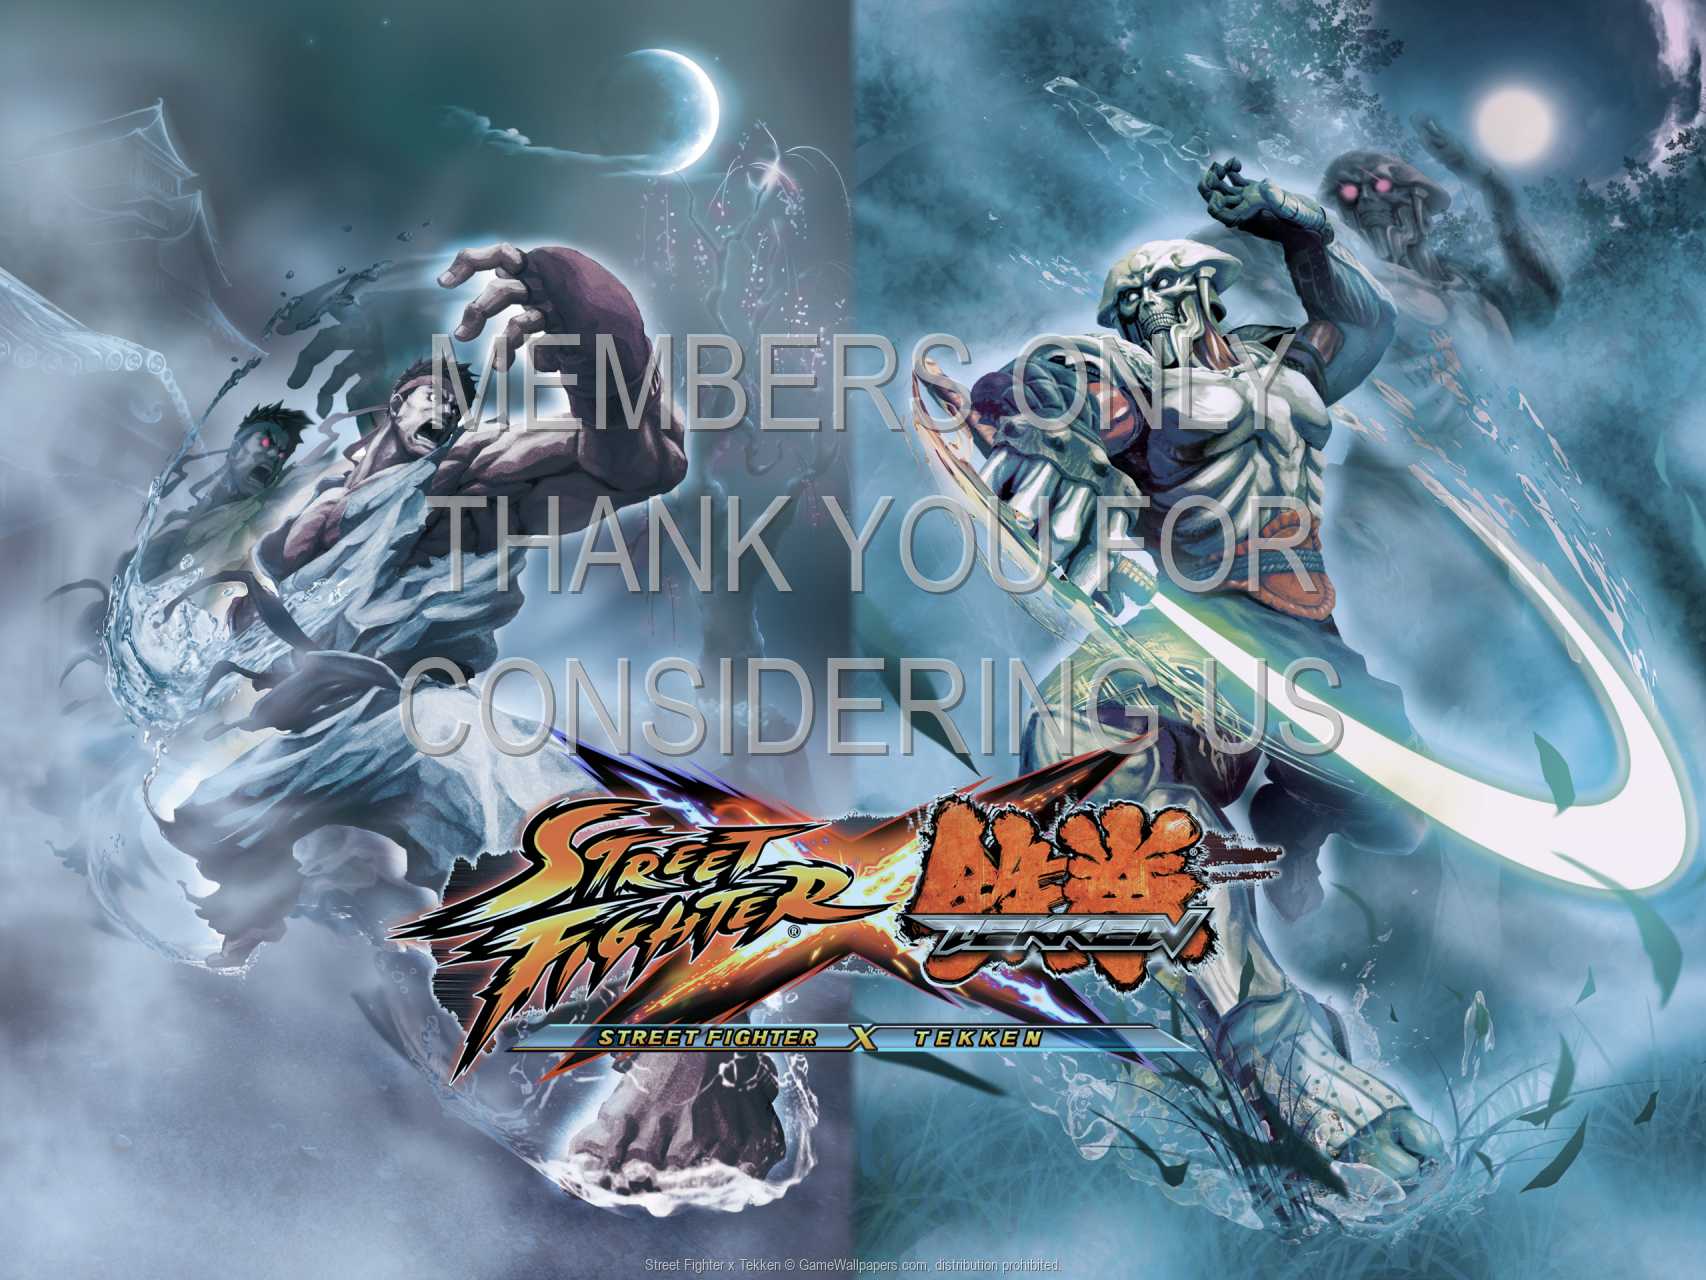 Street Fighter x Tekken 720p Horizontal Mobile wallpaper or background 03